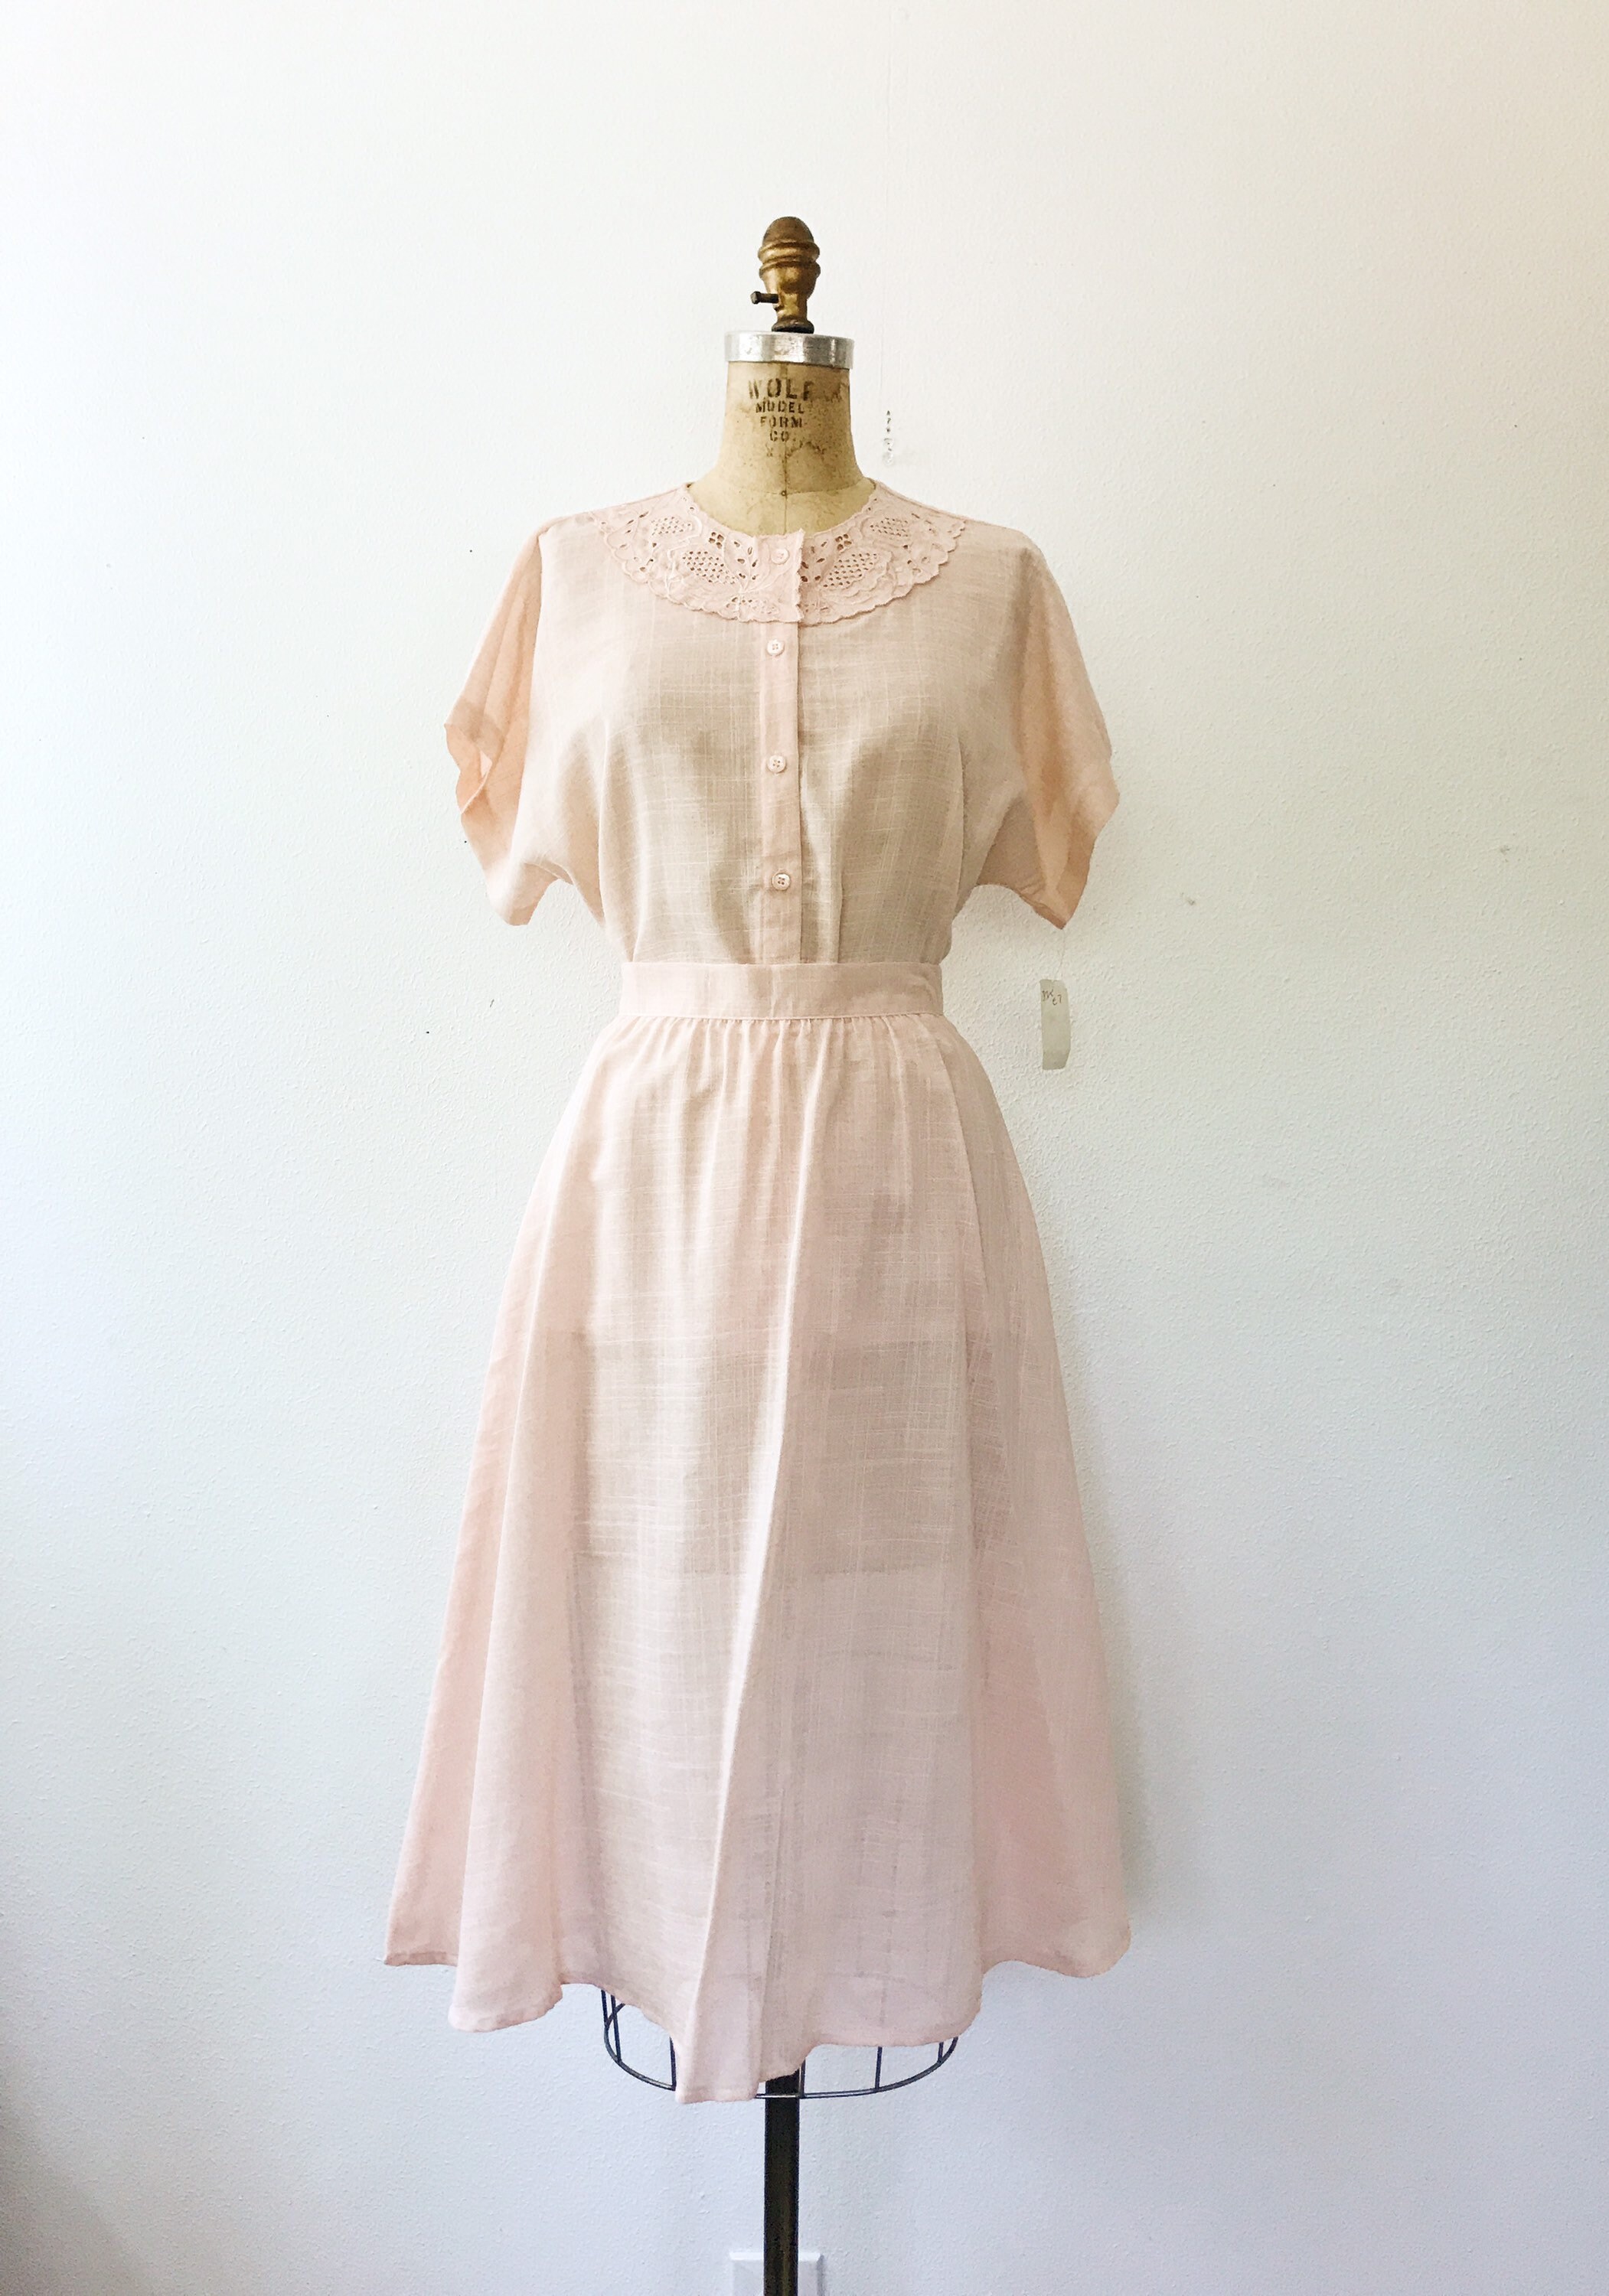 SALE vintage lace dress / peach two piece dress / NOS Cut out lace dress